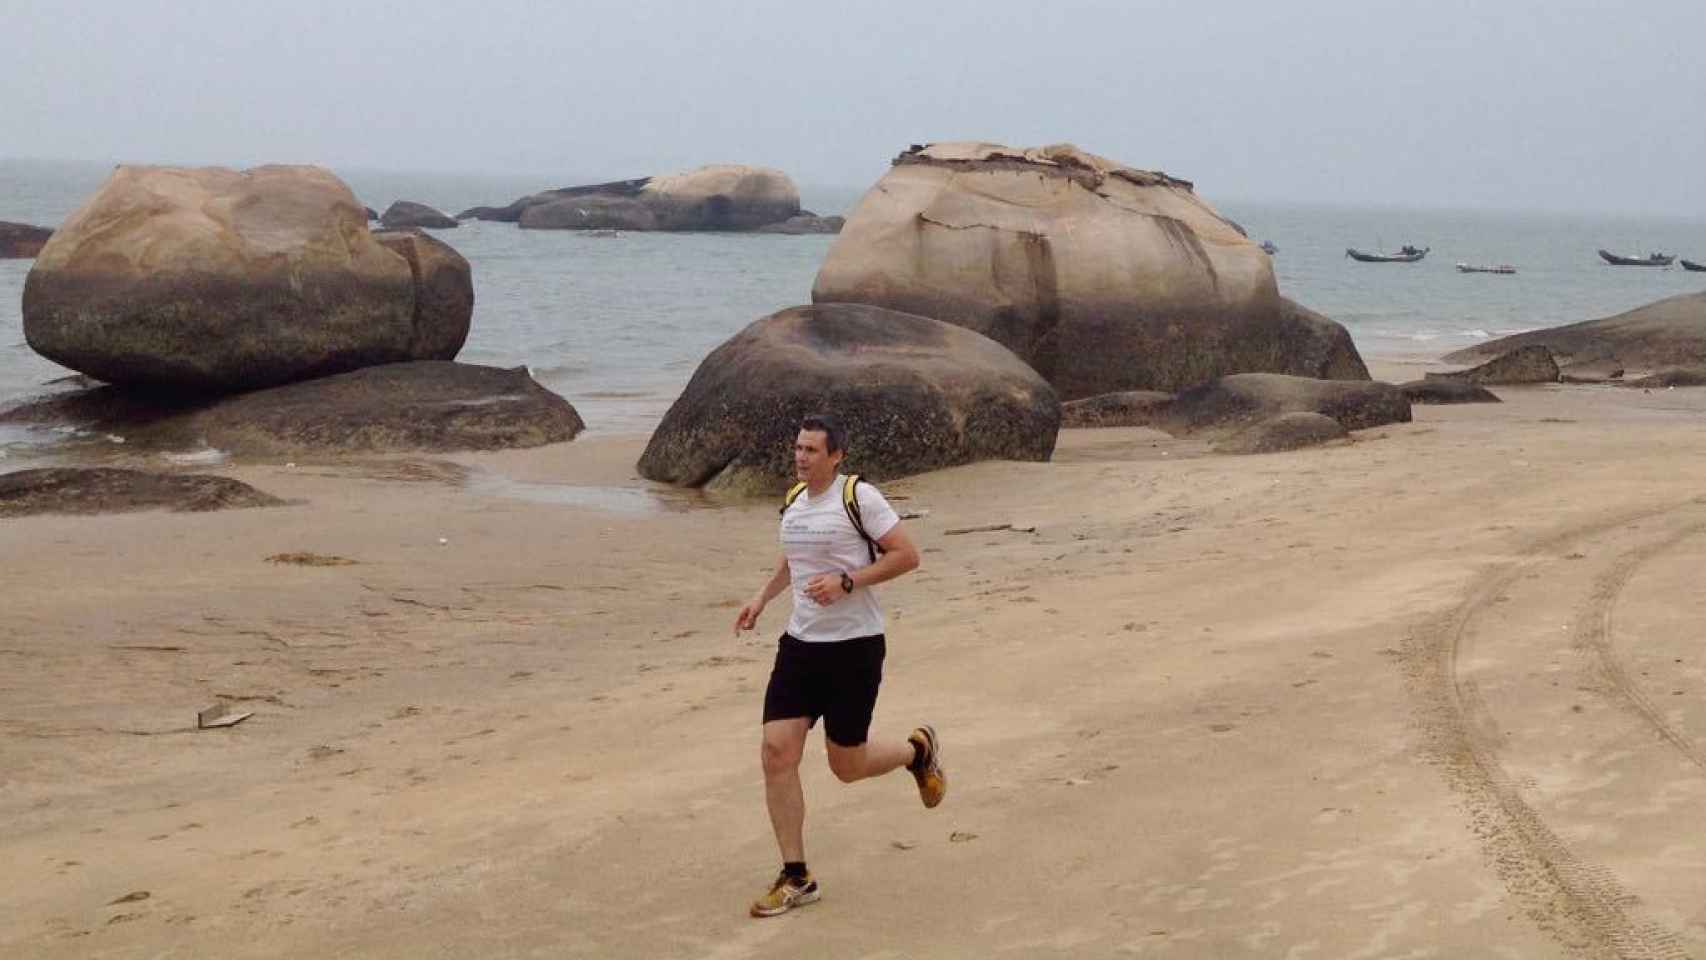 Alberto corriendo en una playa de China.